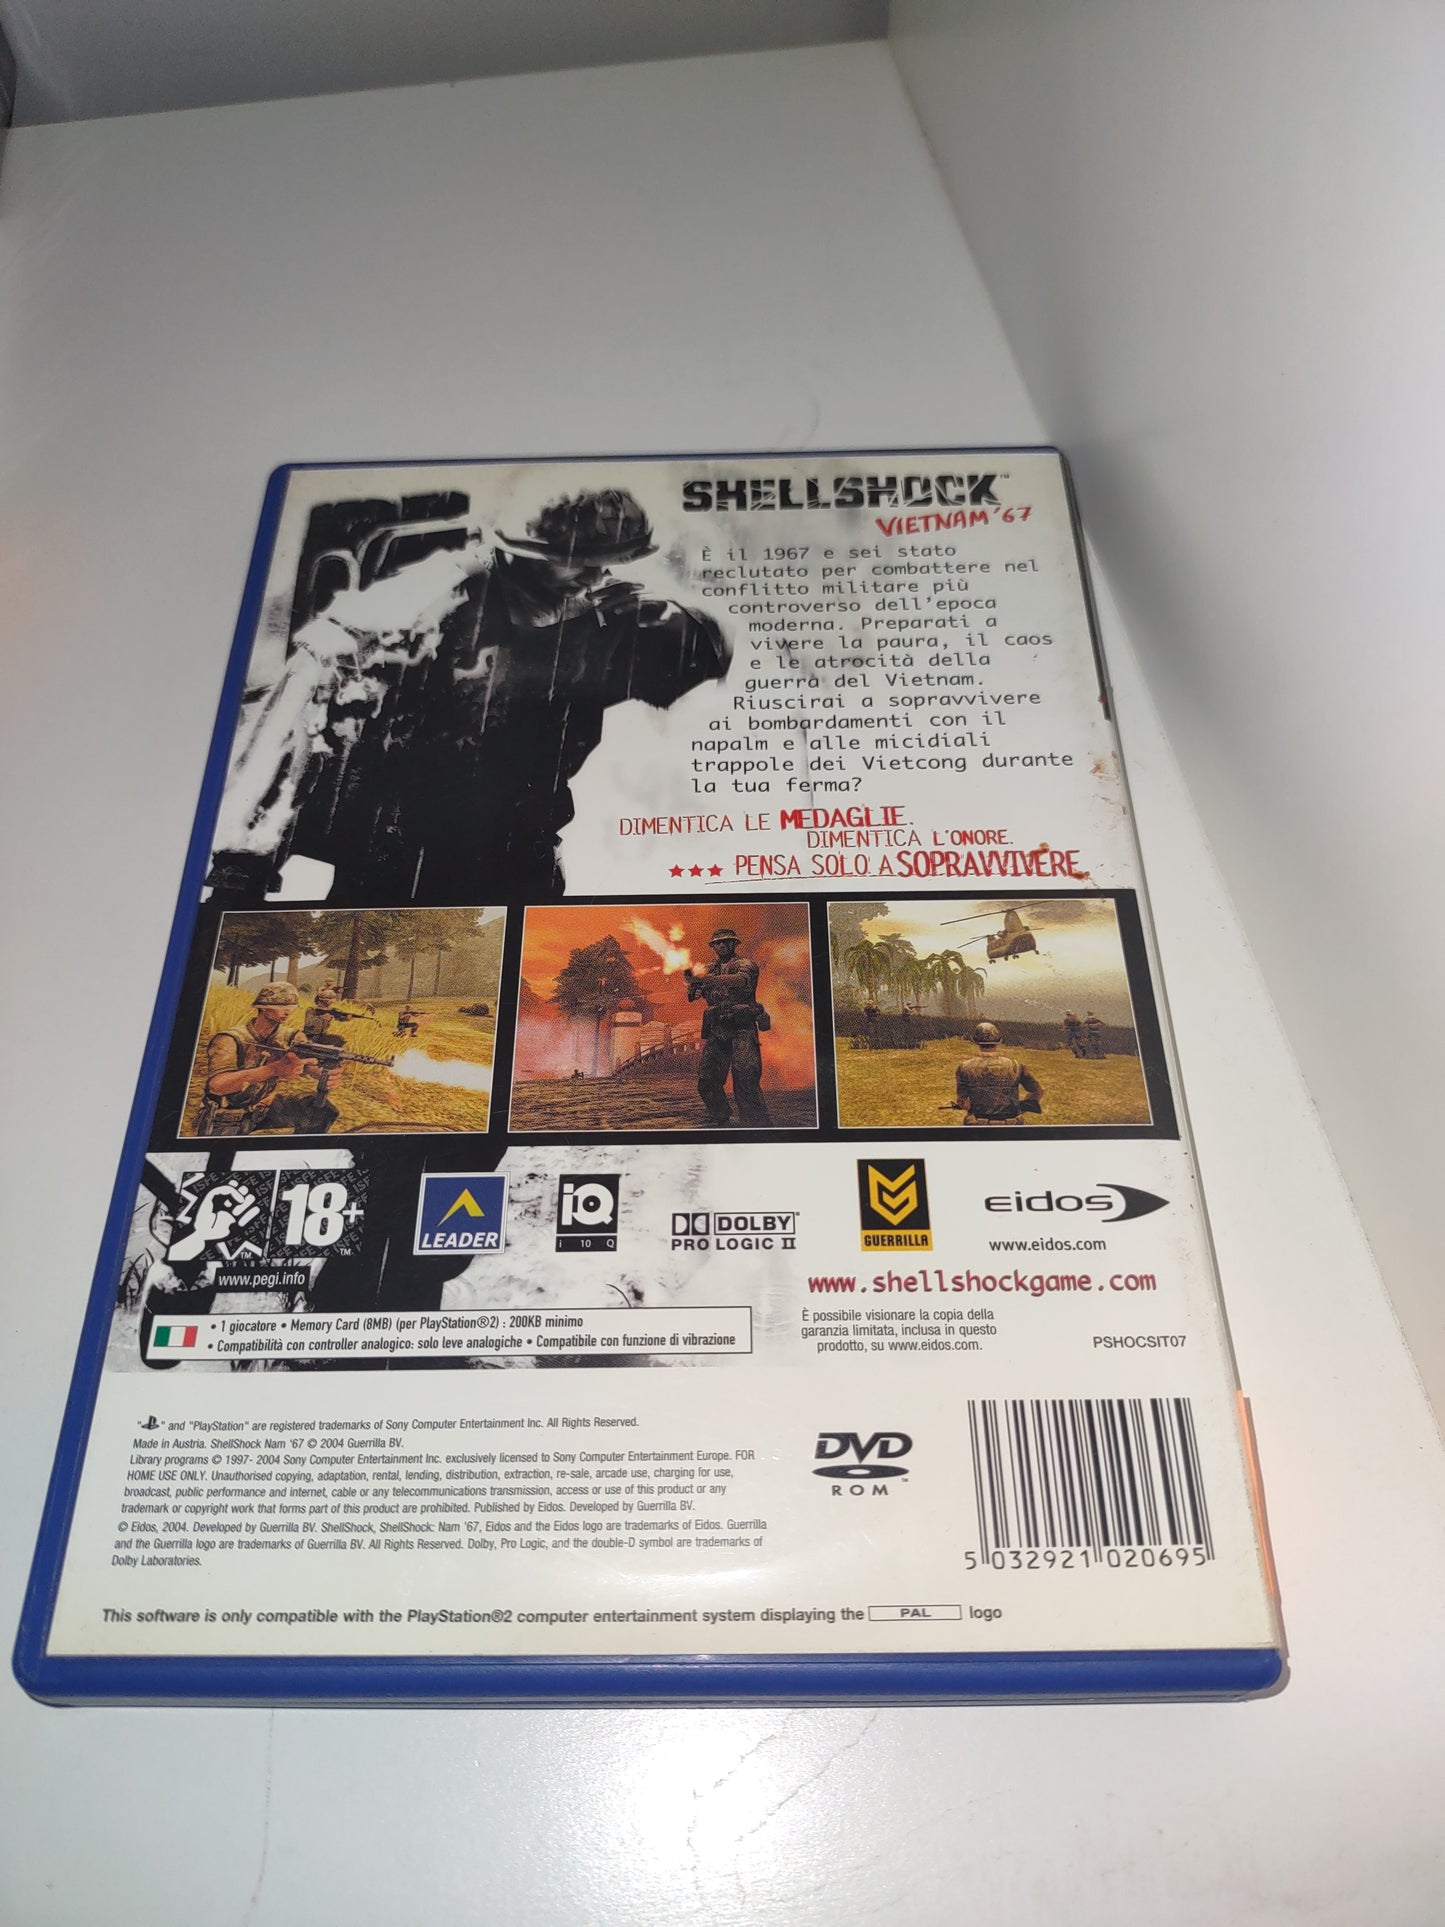 Gioco PlayStation PS2 shellshock Vietnam 67